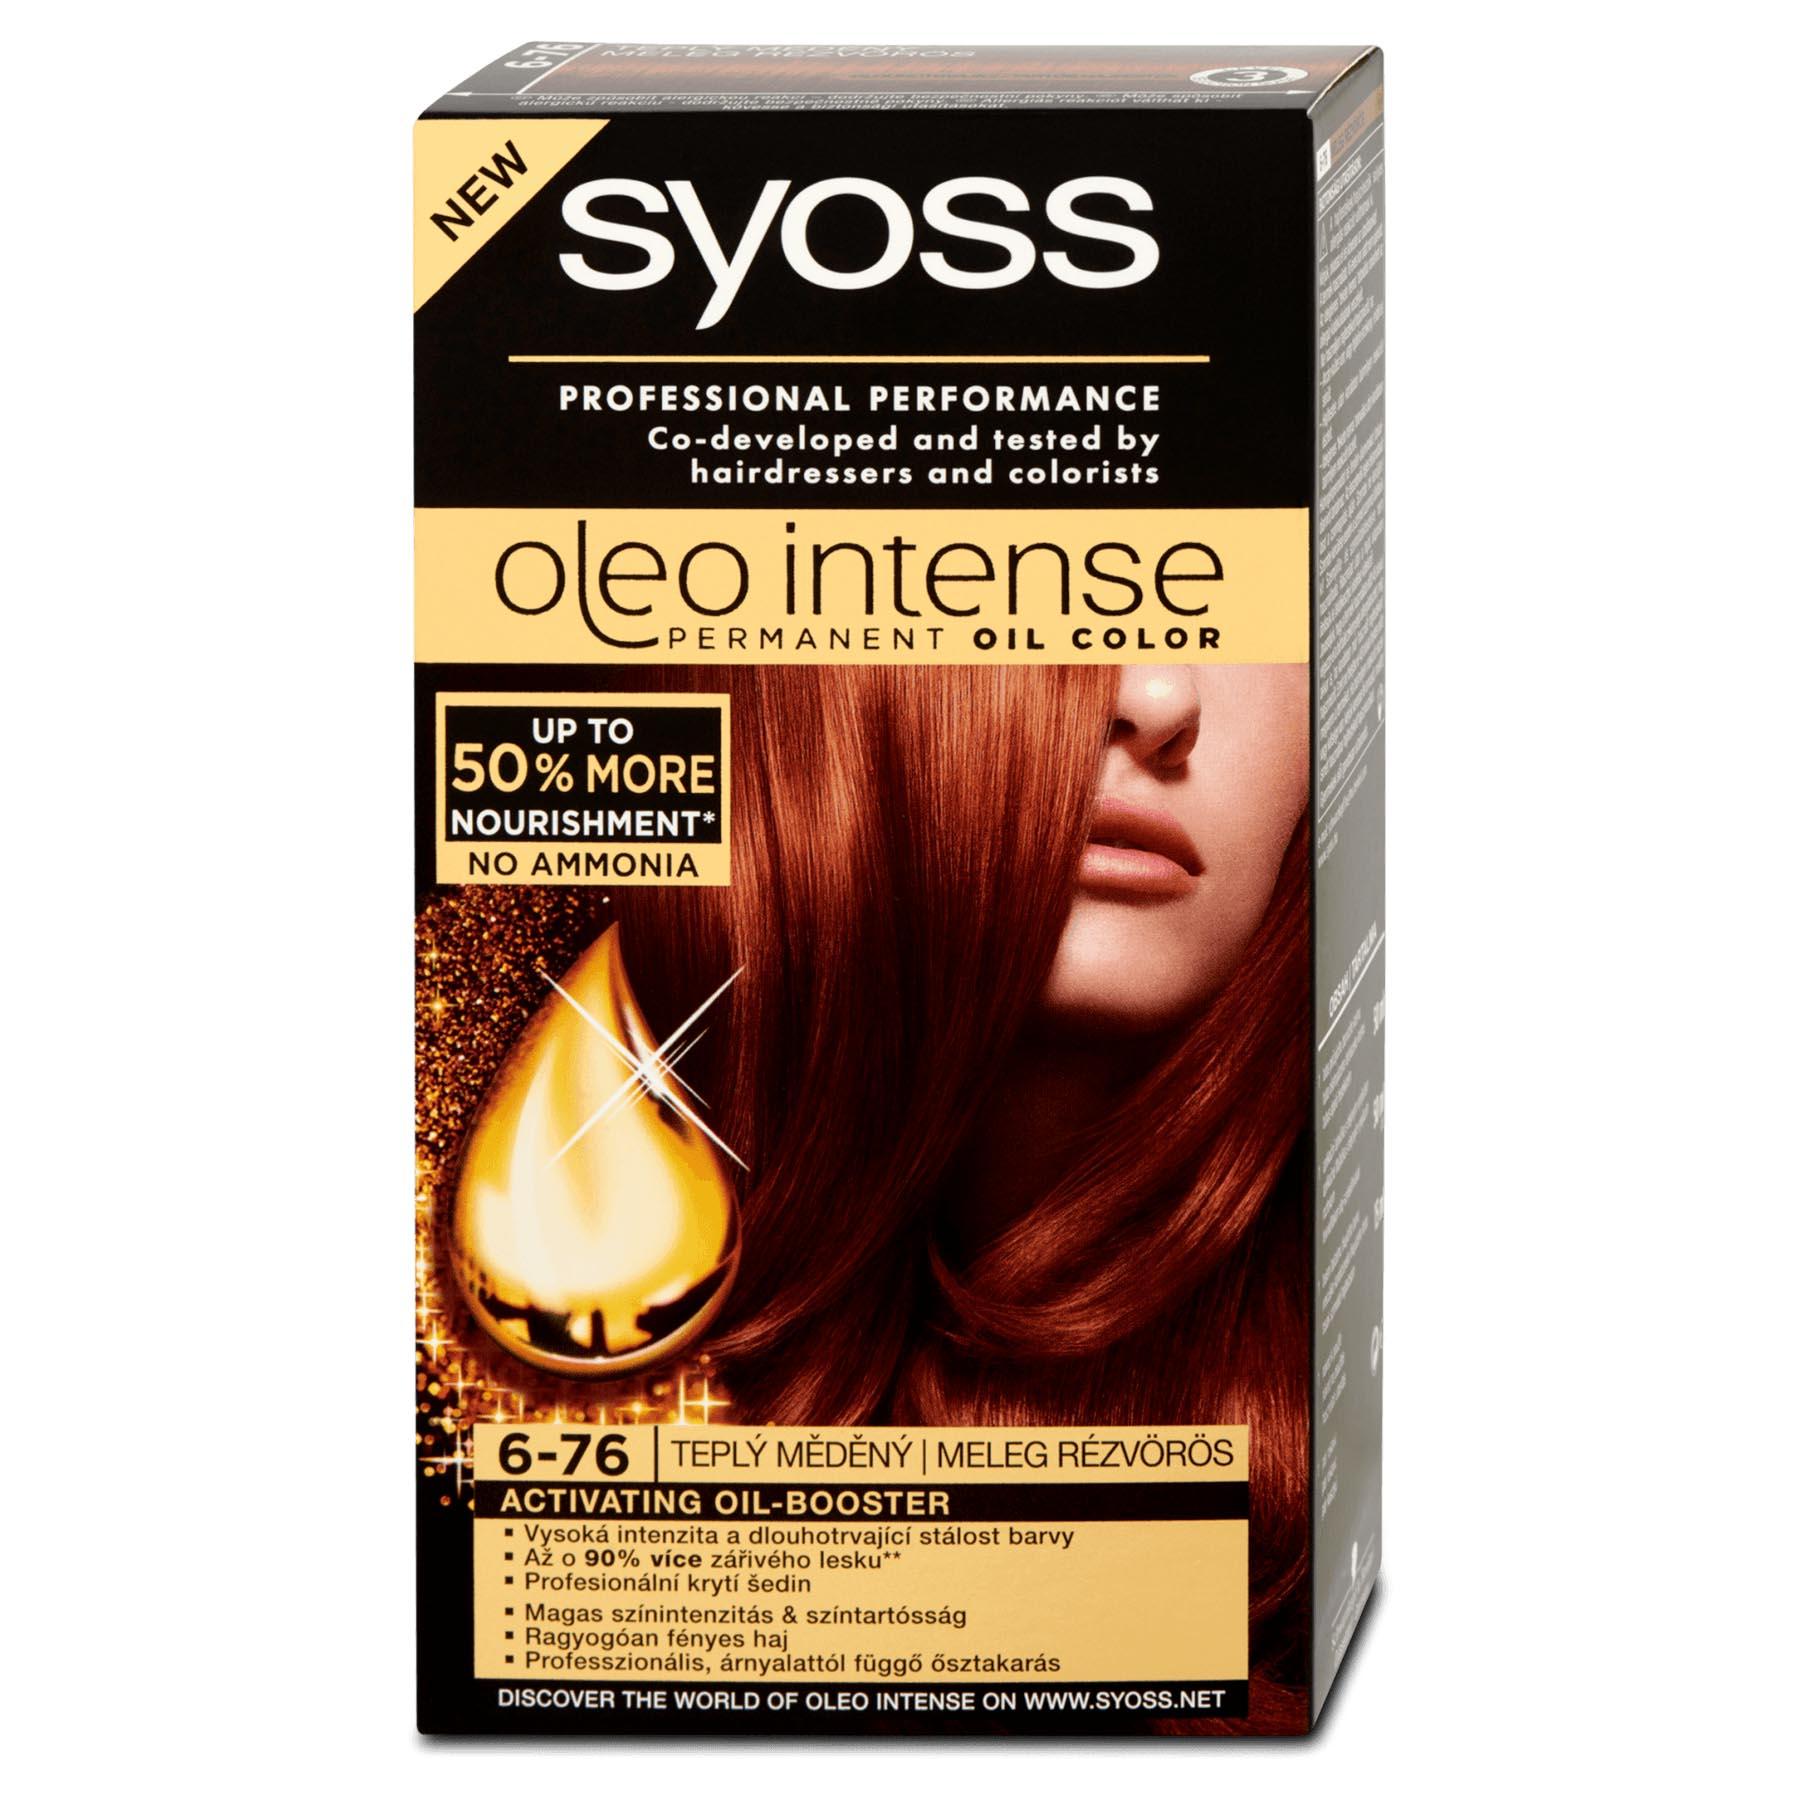 Thuốc nhuộm tóc Syoss Oleo Intense - Với công thức độc đáo và giàu các chất giúp tóc khỏe mạnh hơn, thuốc nhuộm tóc Syoss Oleo Intense giúp bạn có được màu tóc tuyệt đẹp và sáng bóng tự nhiên như ý muốn. Thuốc nhuộm tóc Syoss Oleo Intense không chỉ giúp thay đổi màu tóc một cách dễ dàng mà còn bảo vệ tóc khỏi sự hư hỏng. Hãy trải nghiệm với thuốc nhuộm tóc Syoss Oleo Intense và sở hữu mái tóc thật đẹp.